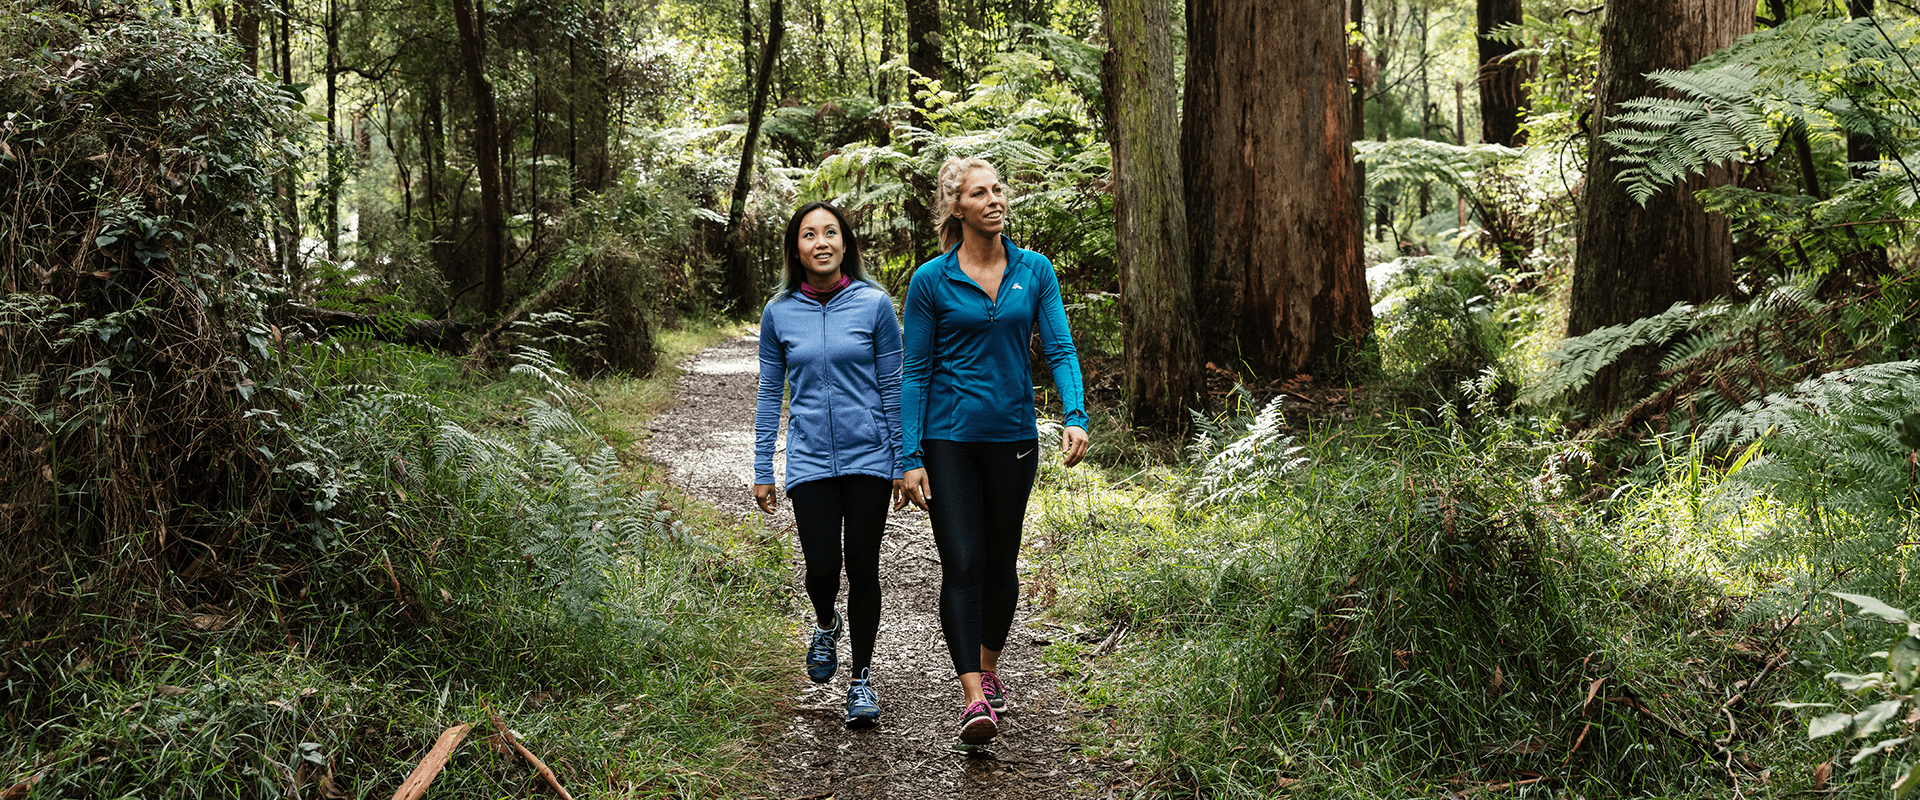 Two females enjoying a walk through a ferny forest path.